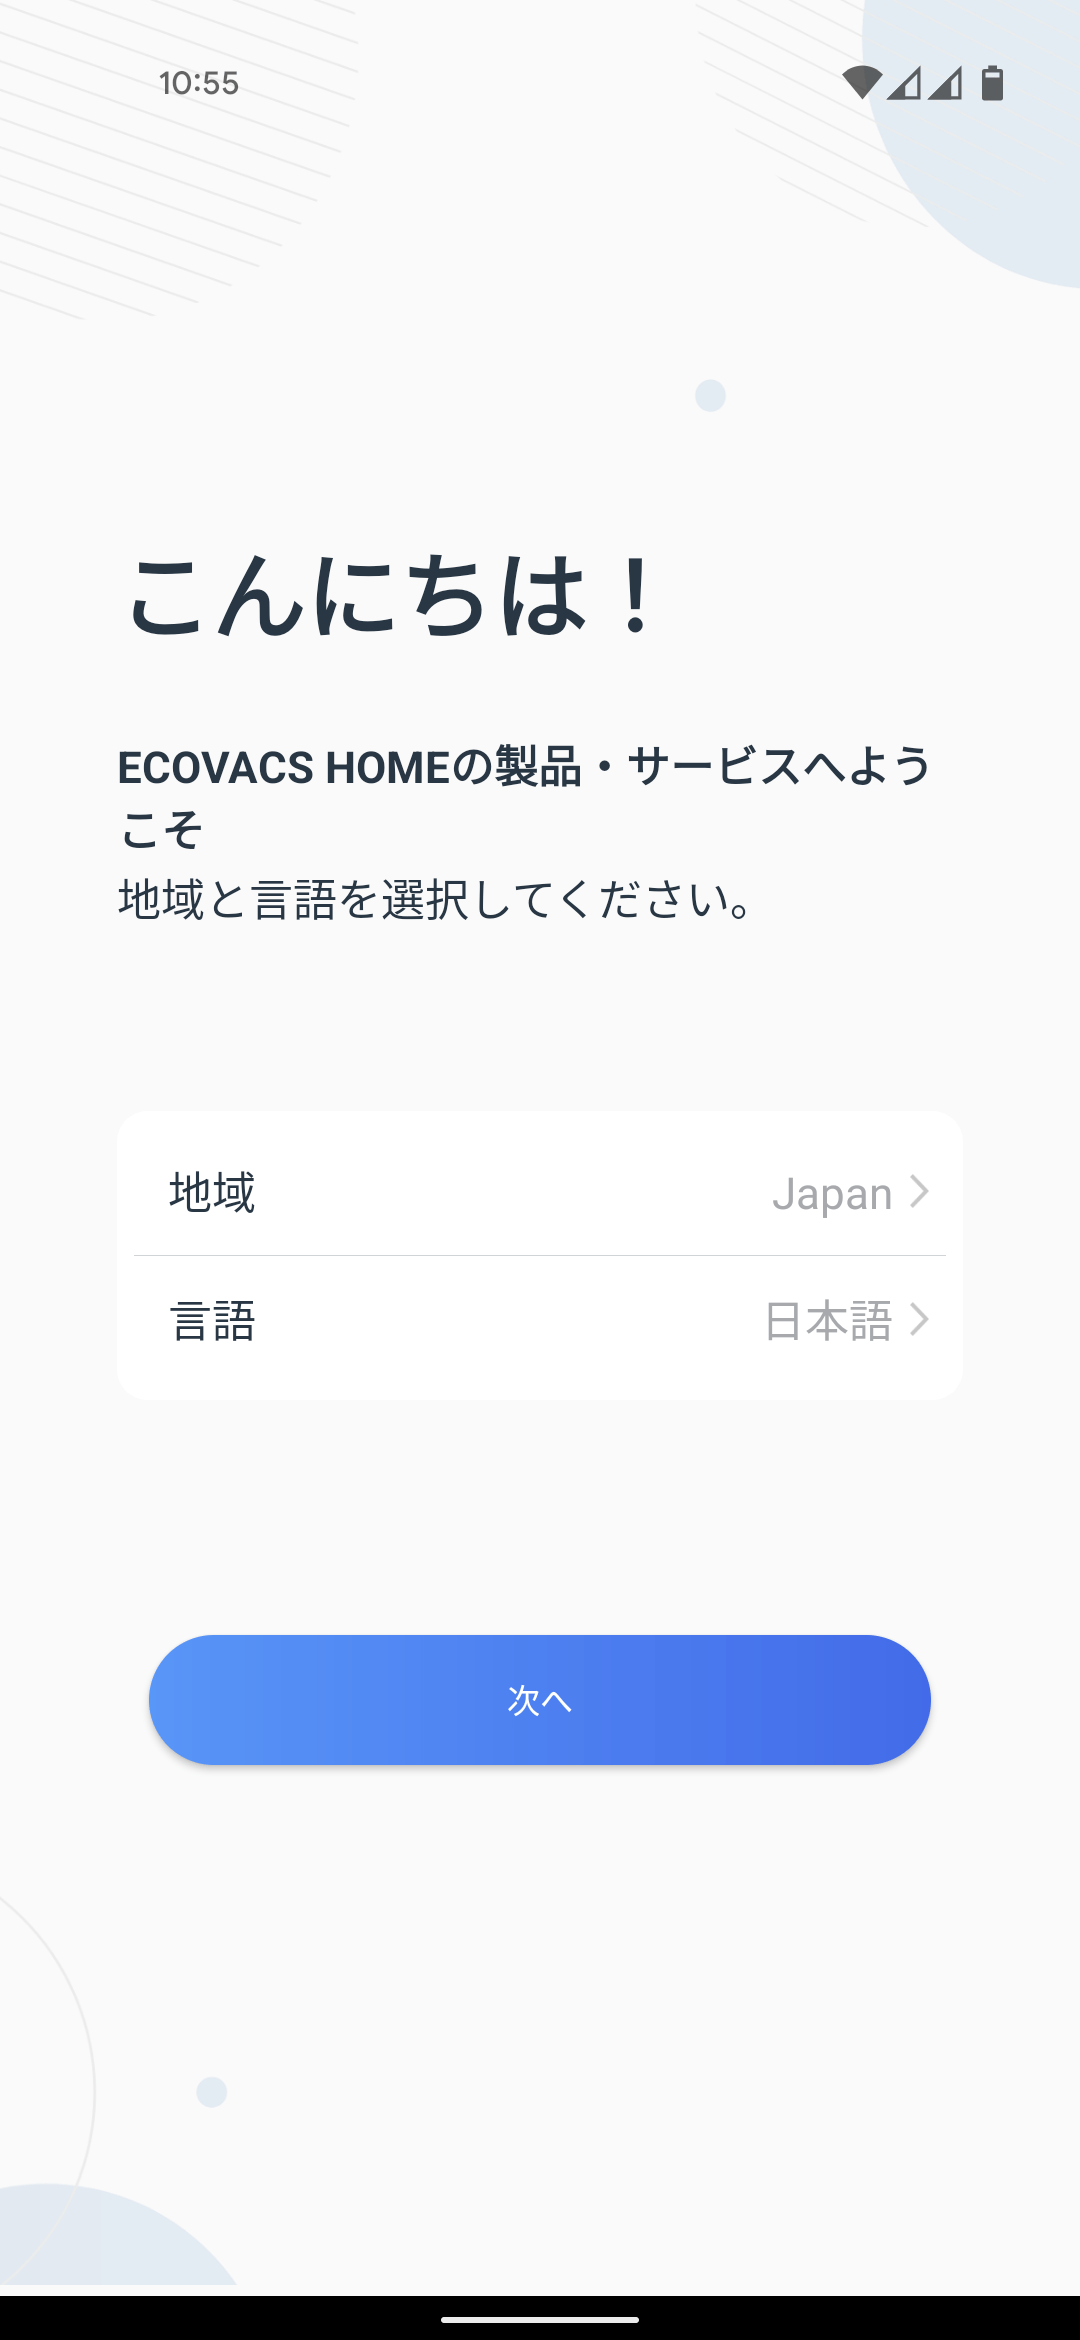 ECOVACS DEEBOT N8+ Amazon.co.jp限定モデル ロボット掃除機 専用アプリ ユーザ登録